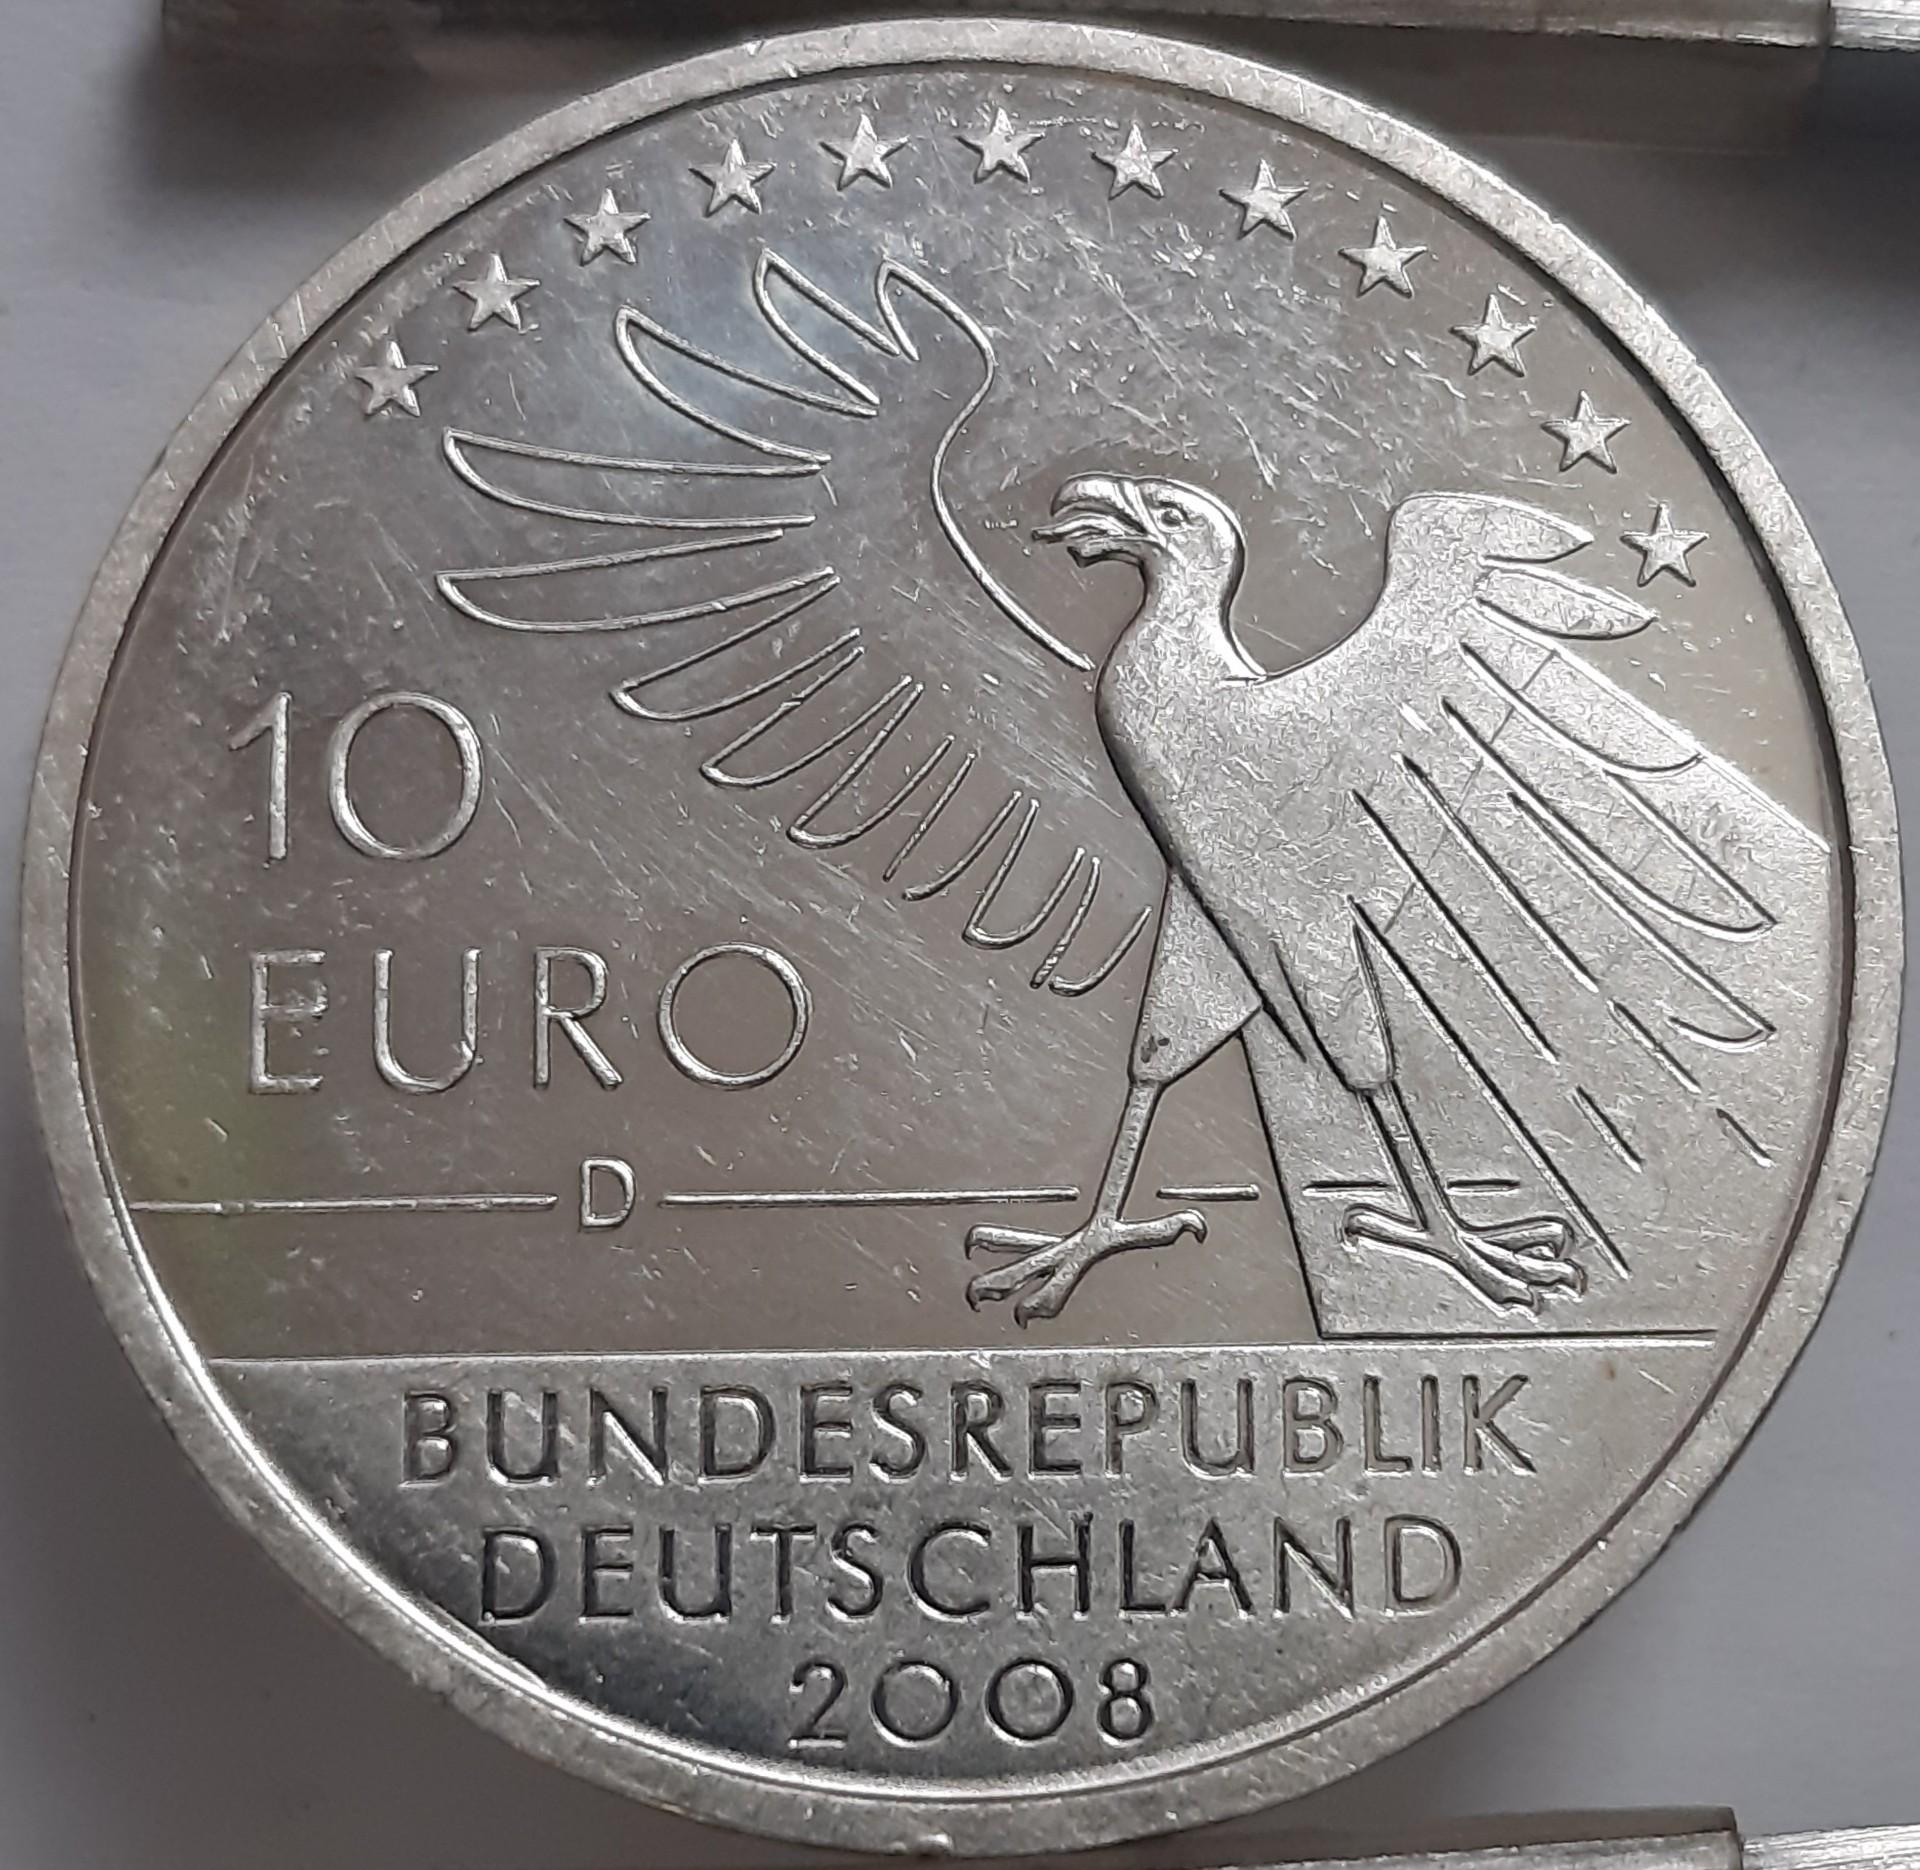 Vokietija 10 Eurų 2008 KM#273 Kolekcinė (5801)